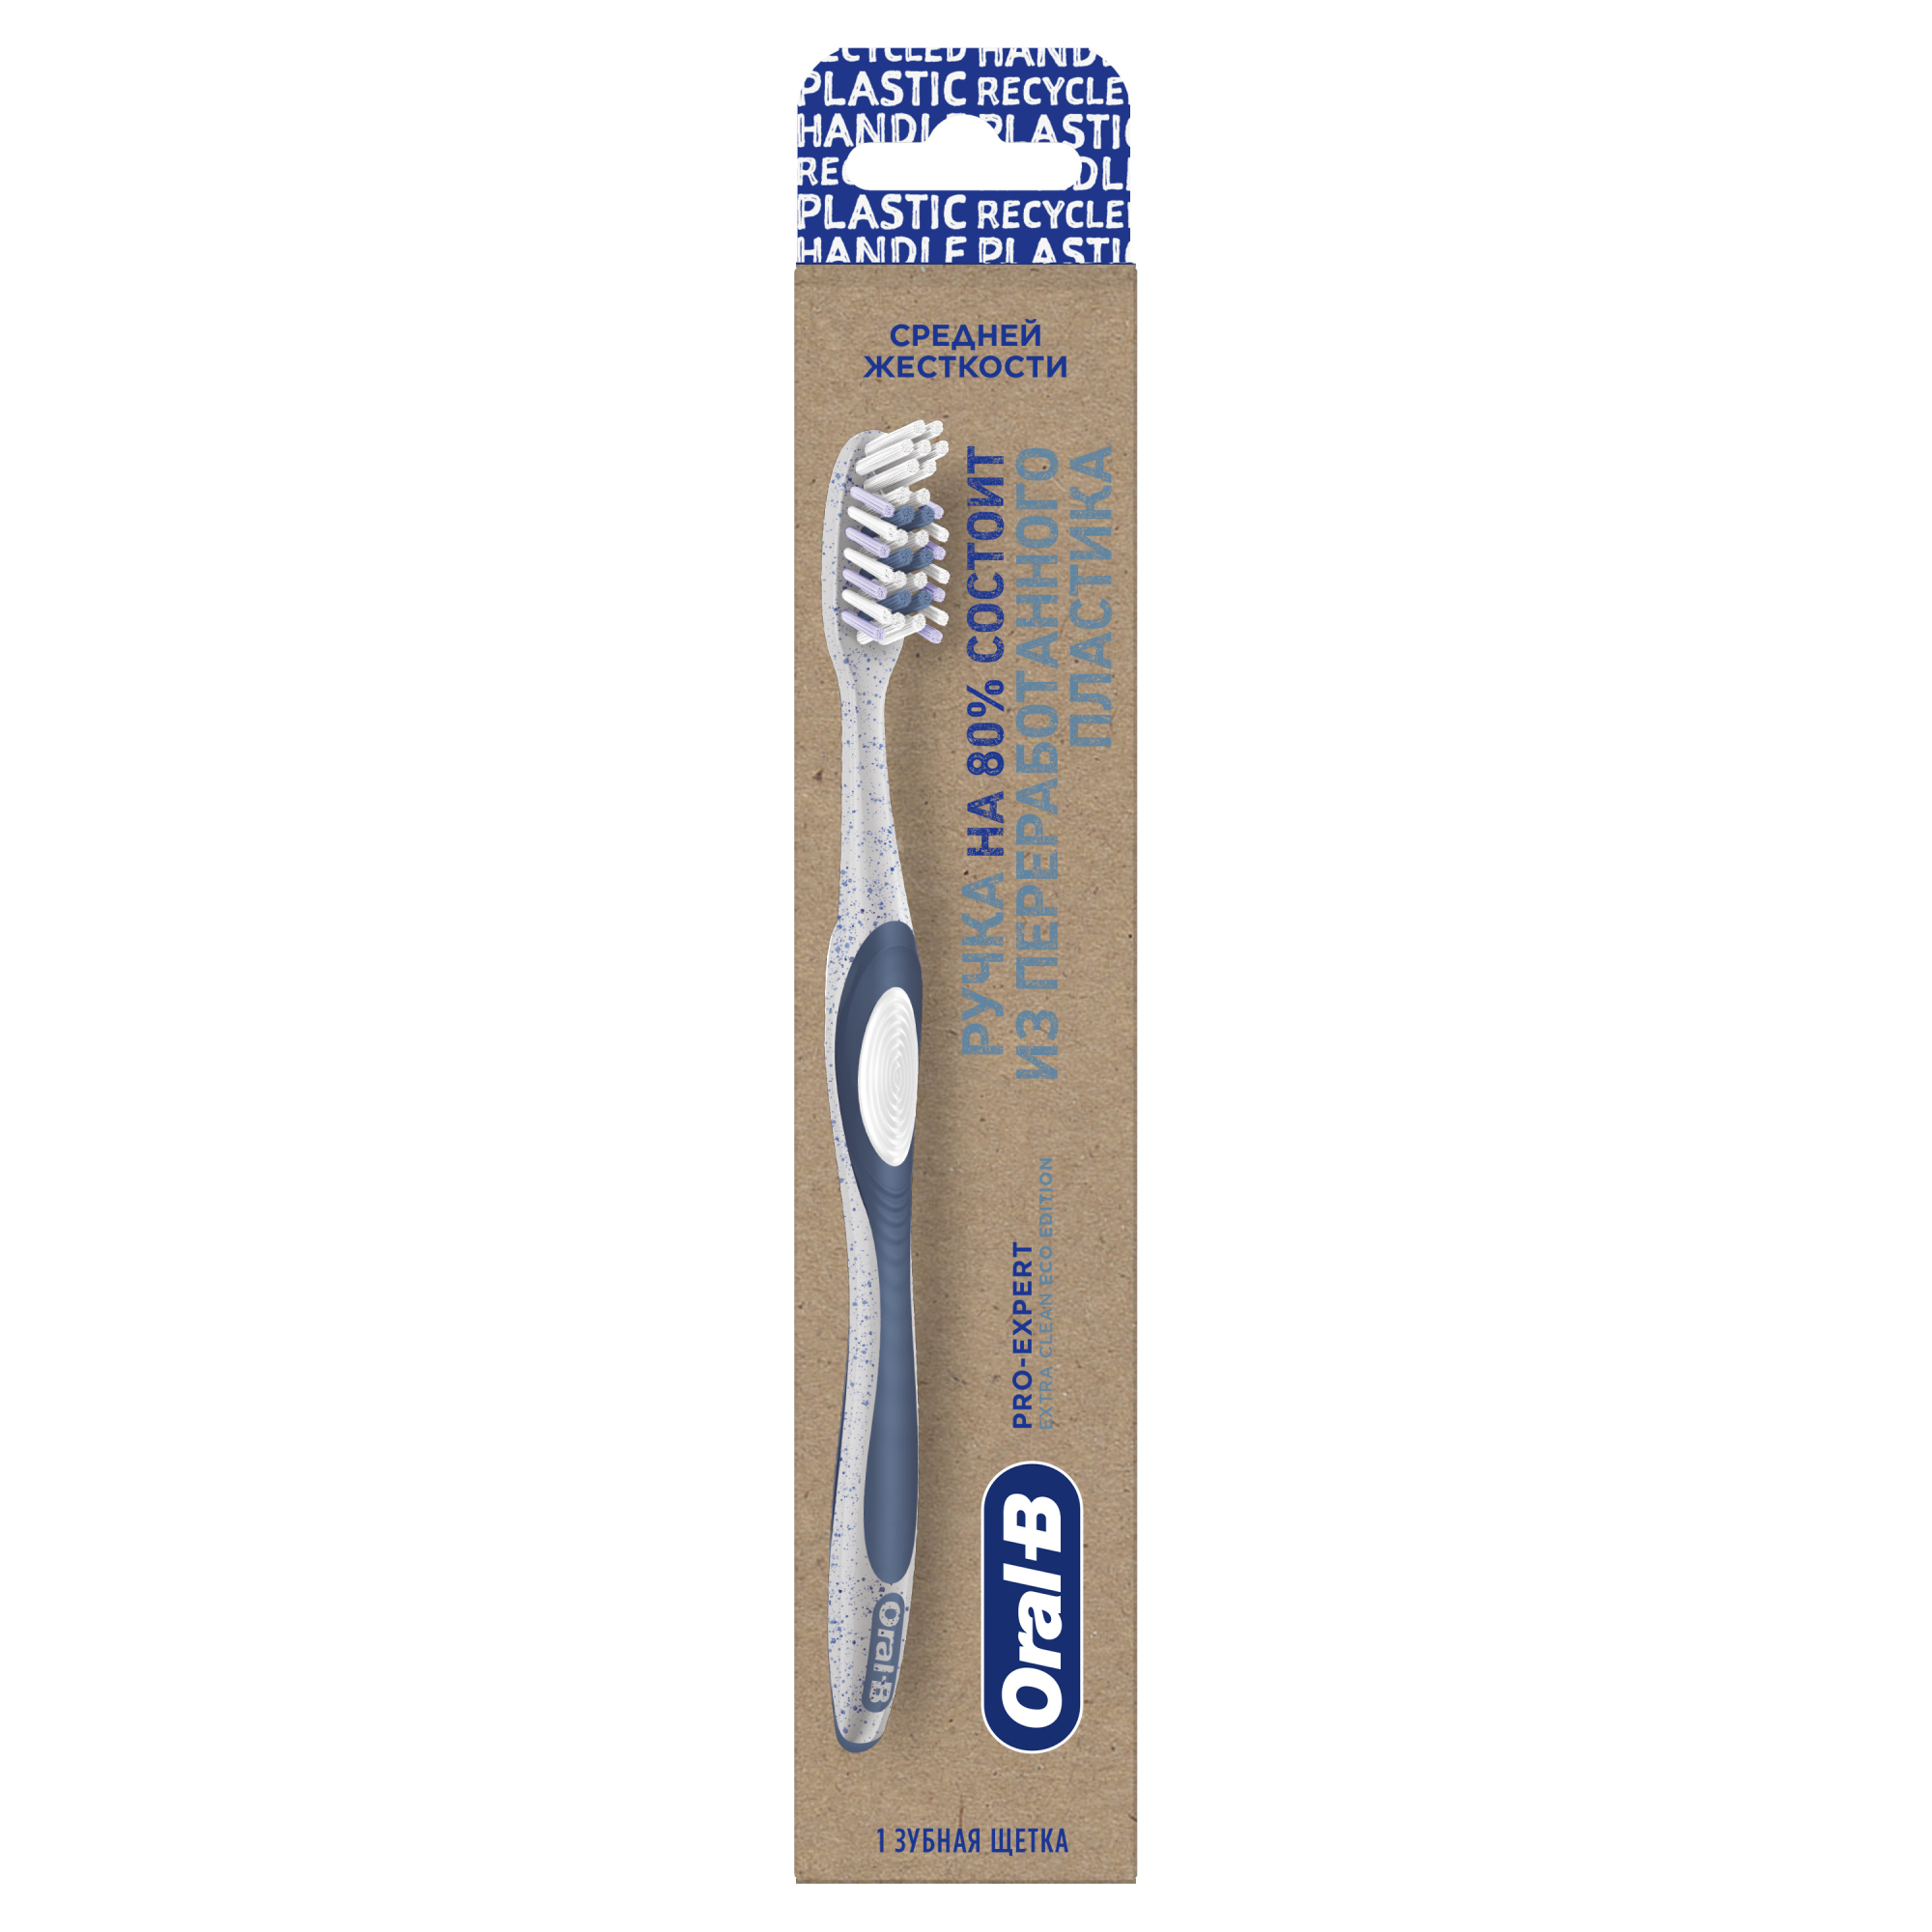 Зубная щетка Oral-B Pro-Expert Eco Edition из переработанного пластика для эффективного очищения, средней жесткости, 1 шт сверхмягкая зубная щетка 10000 щетинок ровная розовая